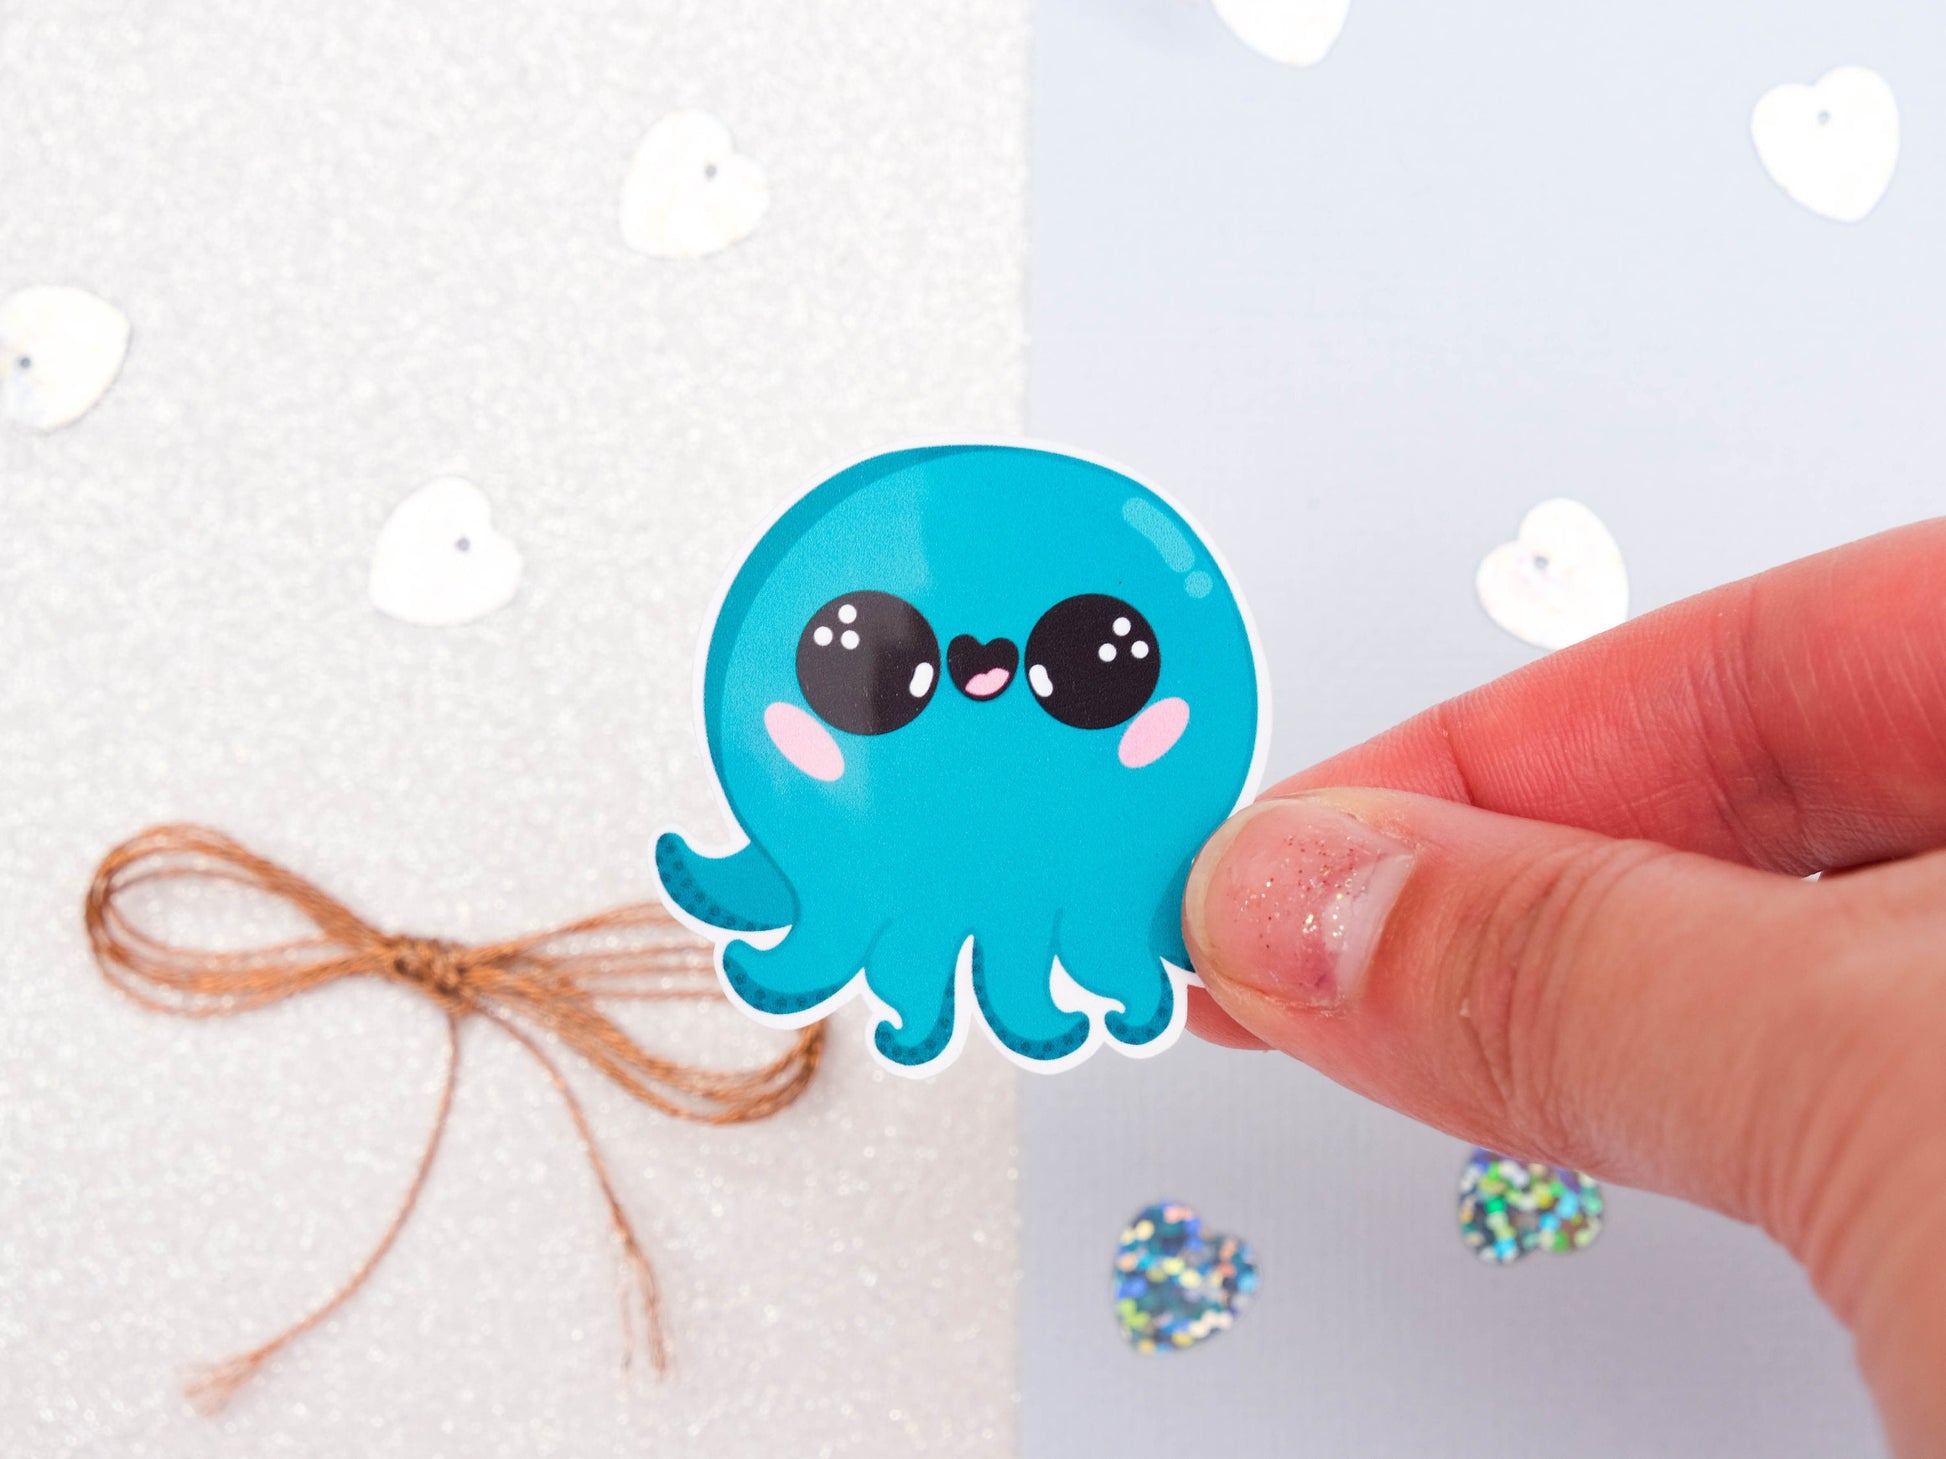 Sticker Potion Octopus - Sticker Cute Octopus - Bullet journal Sticker - Set of Sticker